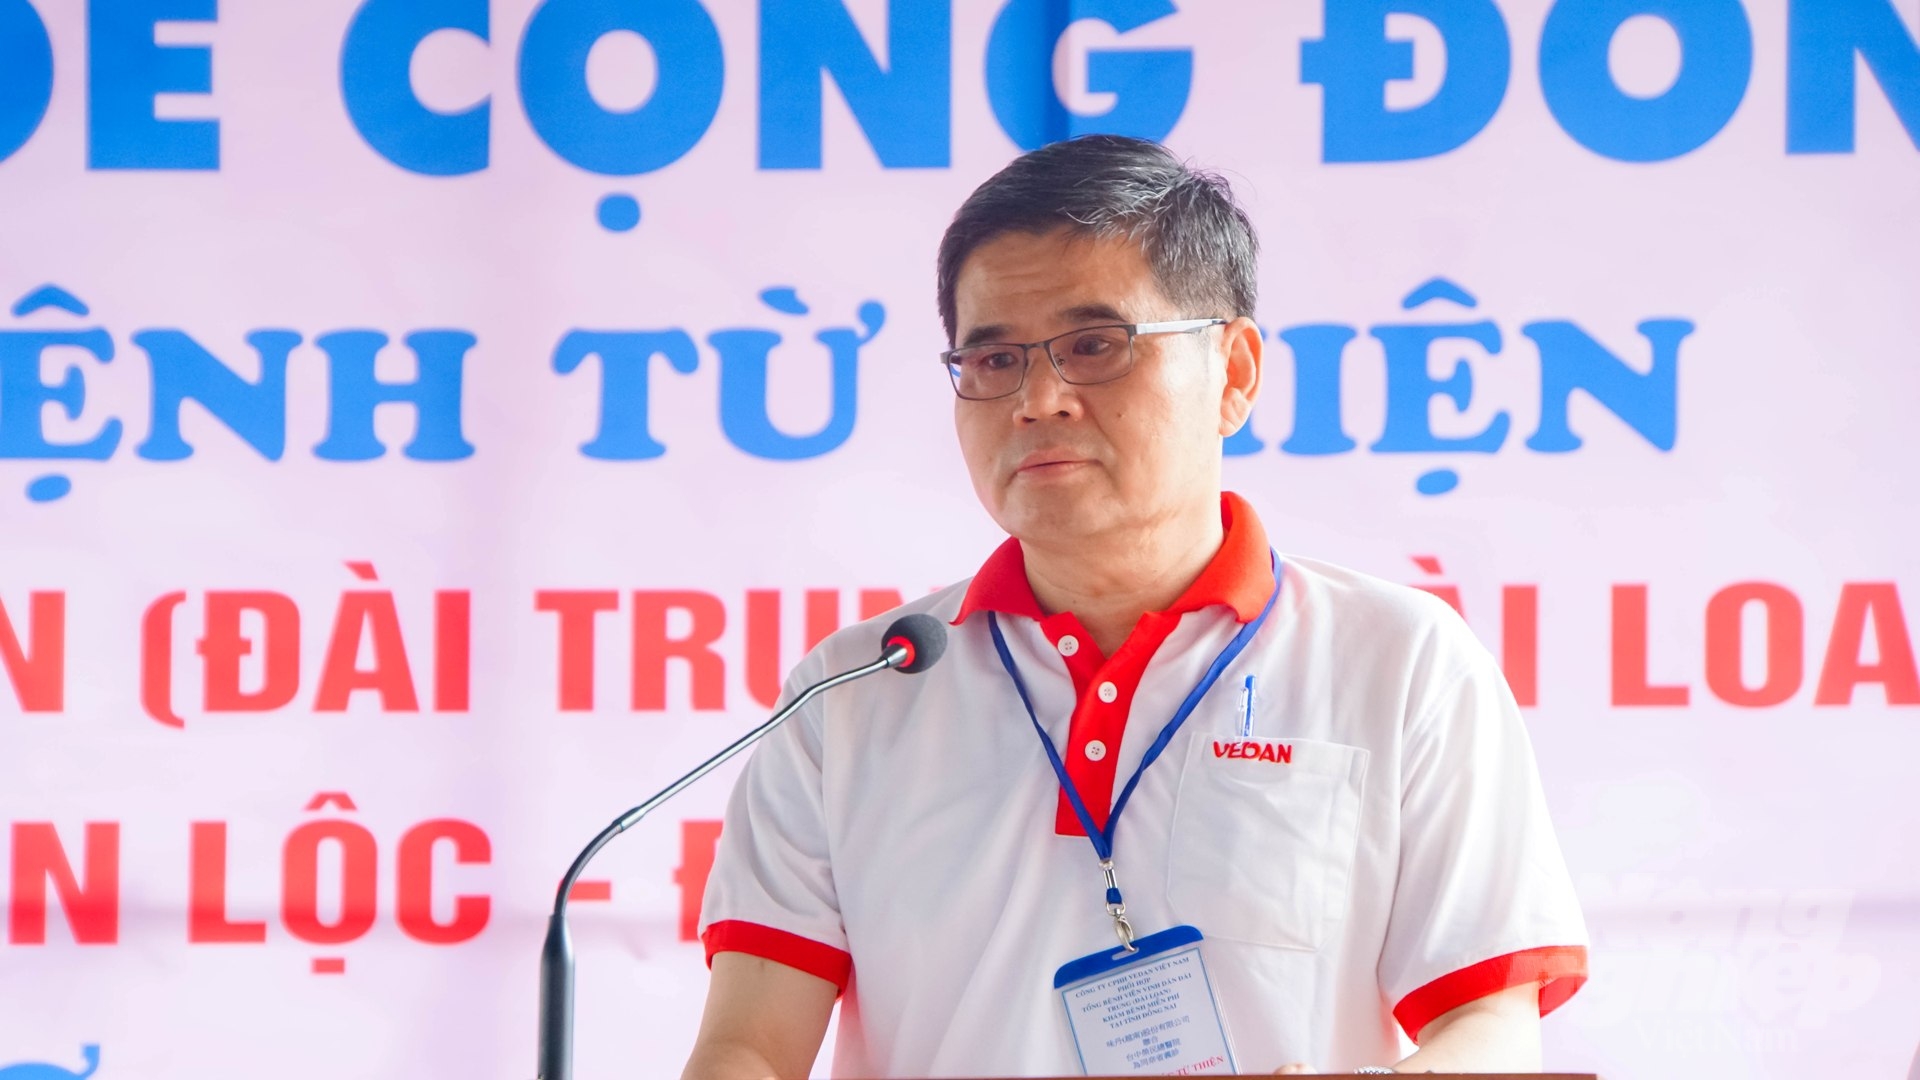 Theo ông Ko Chung Chih - Phó Tổng Giám đốc Vedan Việt Nam, chương trình được khởi đầu từ năm 2012, đến nay Vedan Việt Nam đã thực hiện khám bệnh và phát thuốc cho hơn 16.000 lượt người dân tại tỉnh Đồng Nai.